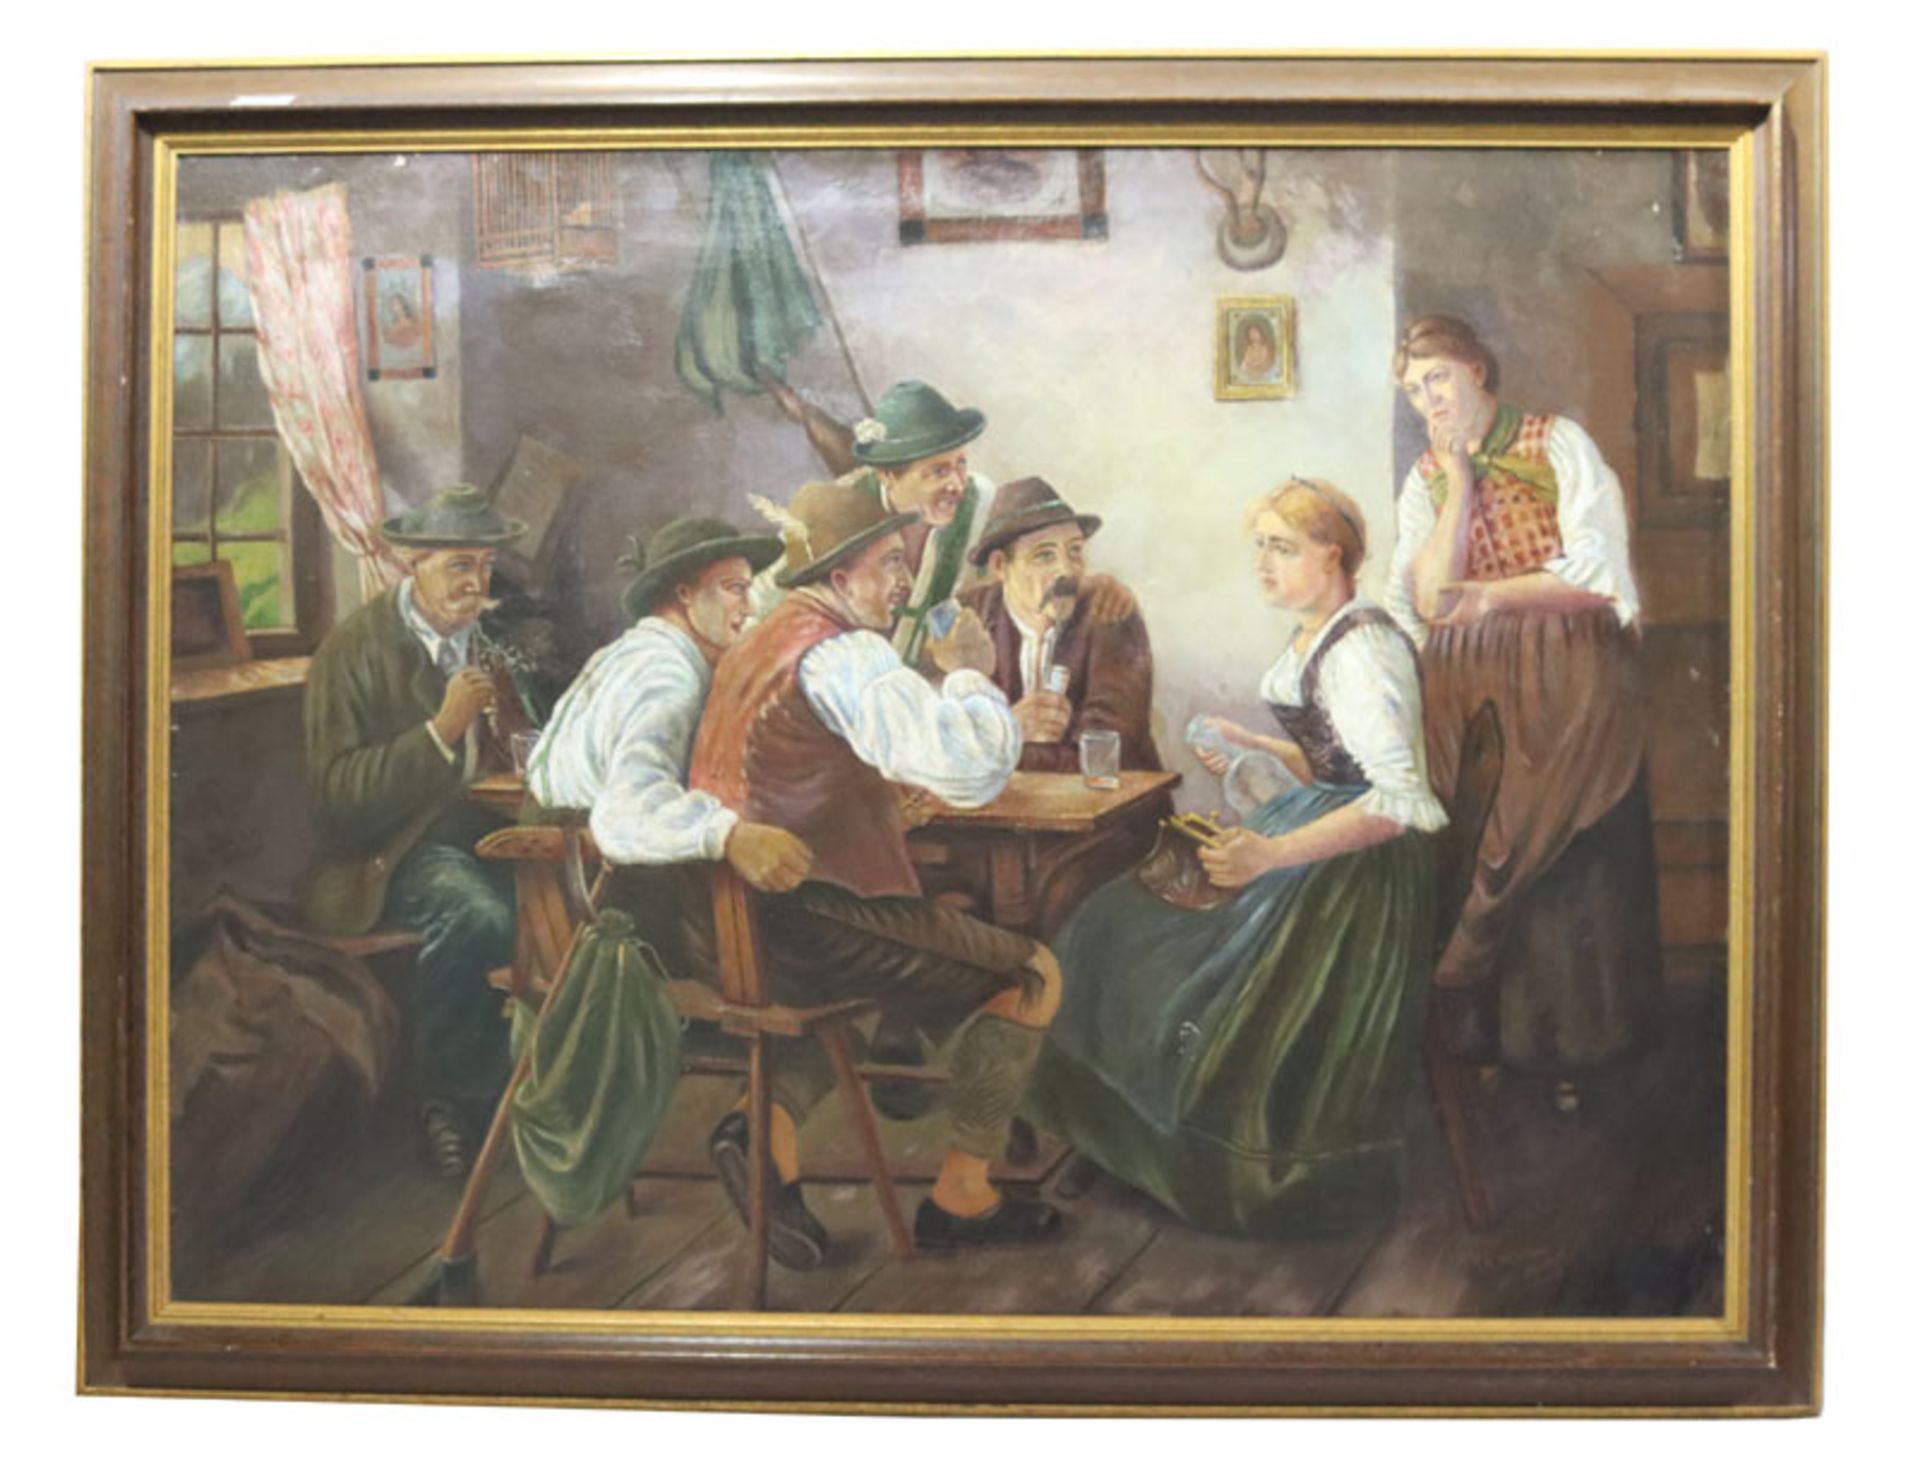 Gemälde ÖL/LW 'Wirtshaus-Szenerie',signiert A. G. Witschar, 1927 München, Bildoberfläche